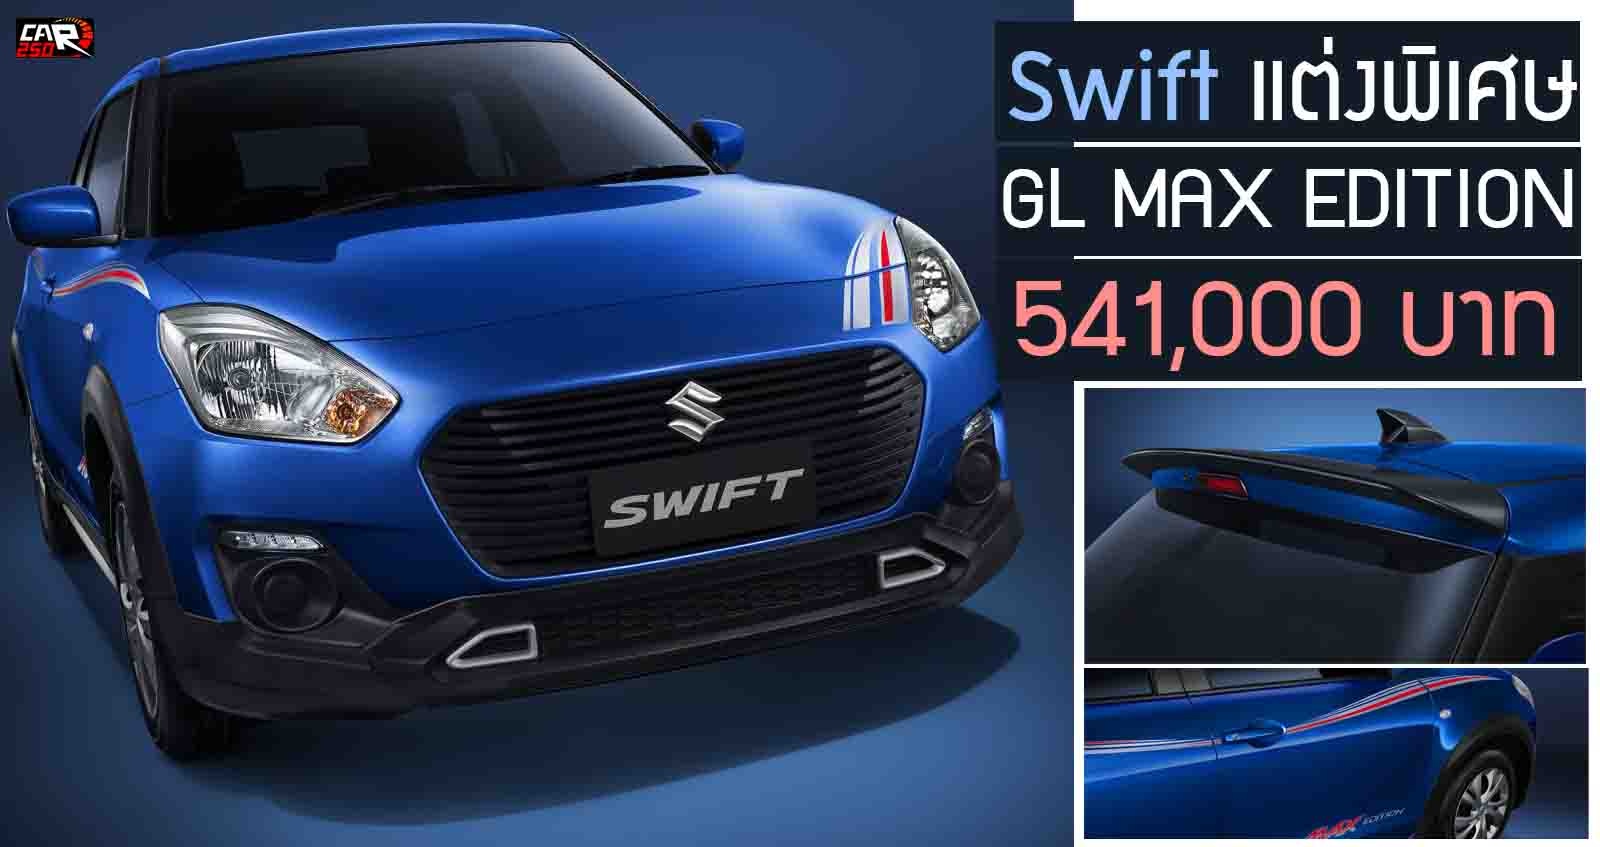 เปิดตัว Suzuki Swift GL MAX EDITION 541,000 บาท รุ่นพิเศษ